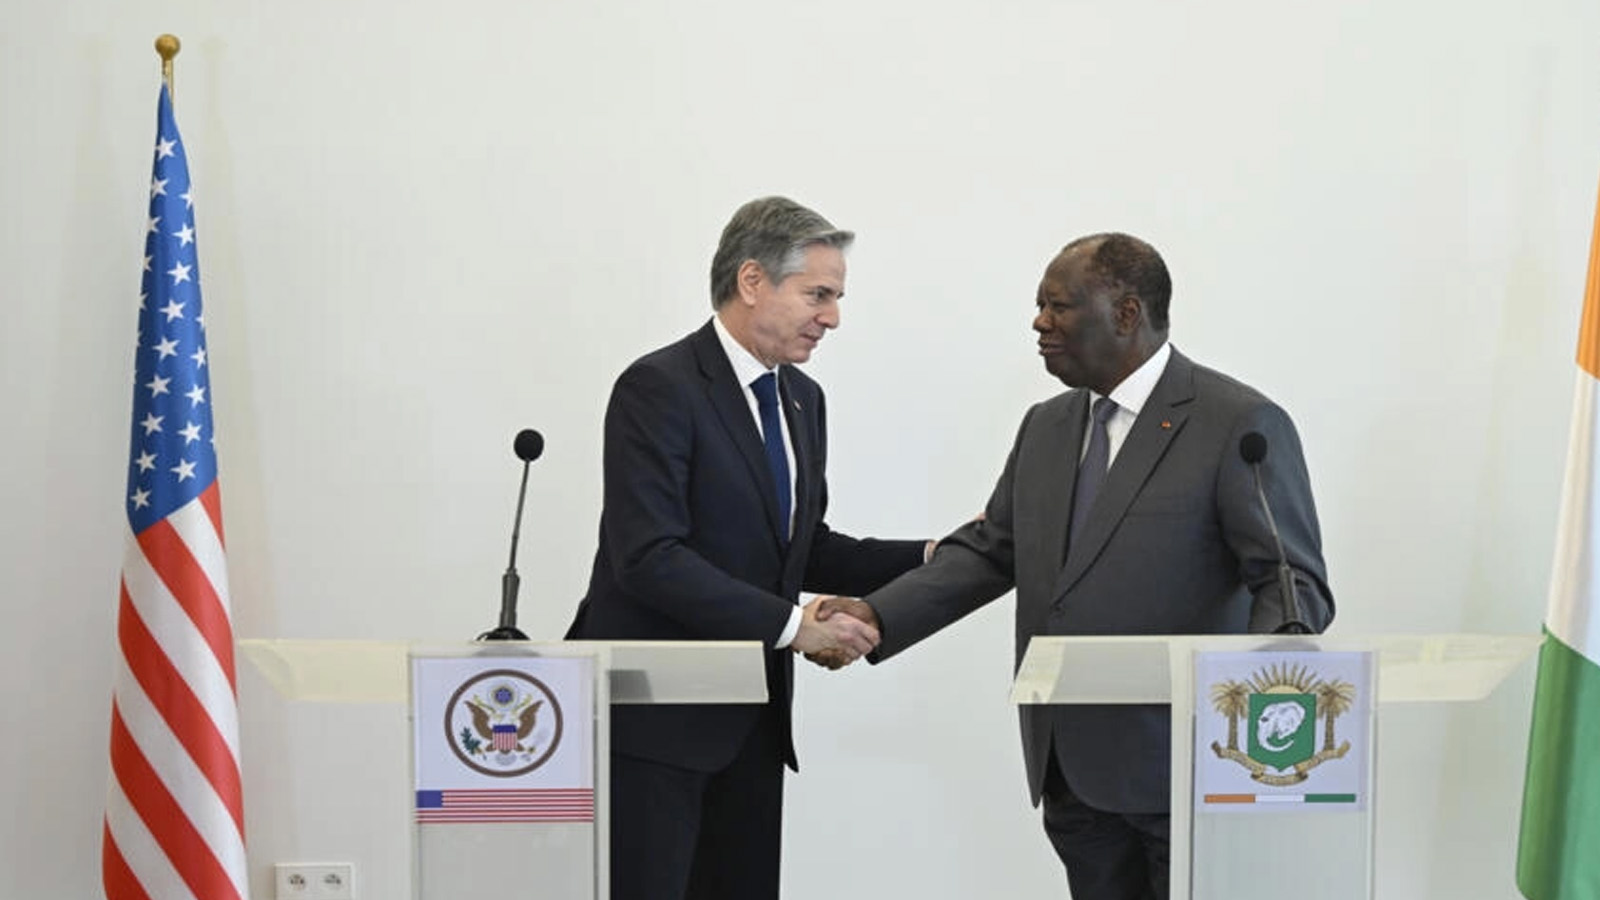 وزير الخارجية الأميركي أنتوني بلينكن (يسار) يلتقي مع رئيس ساحل العاج الحسن واتارا (يمين) خلال جولته في الدول الأفريقية